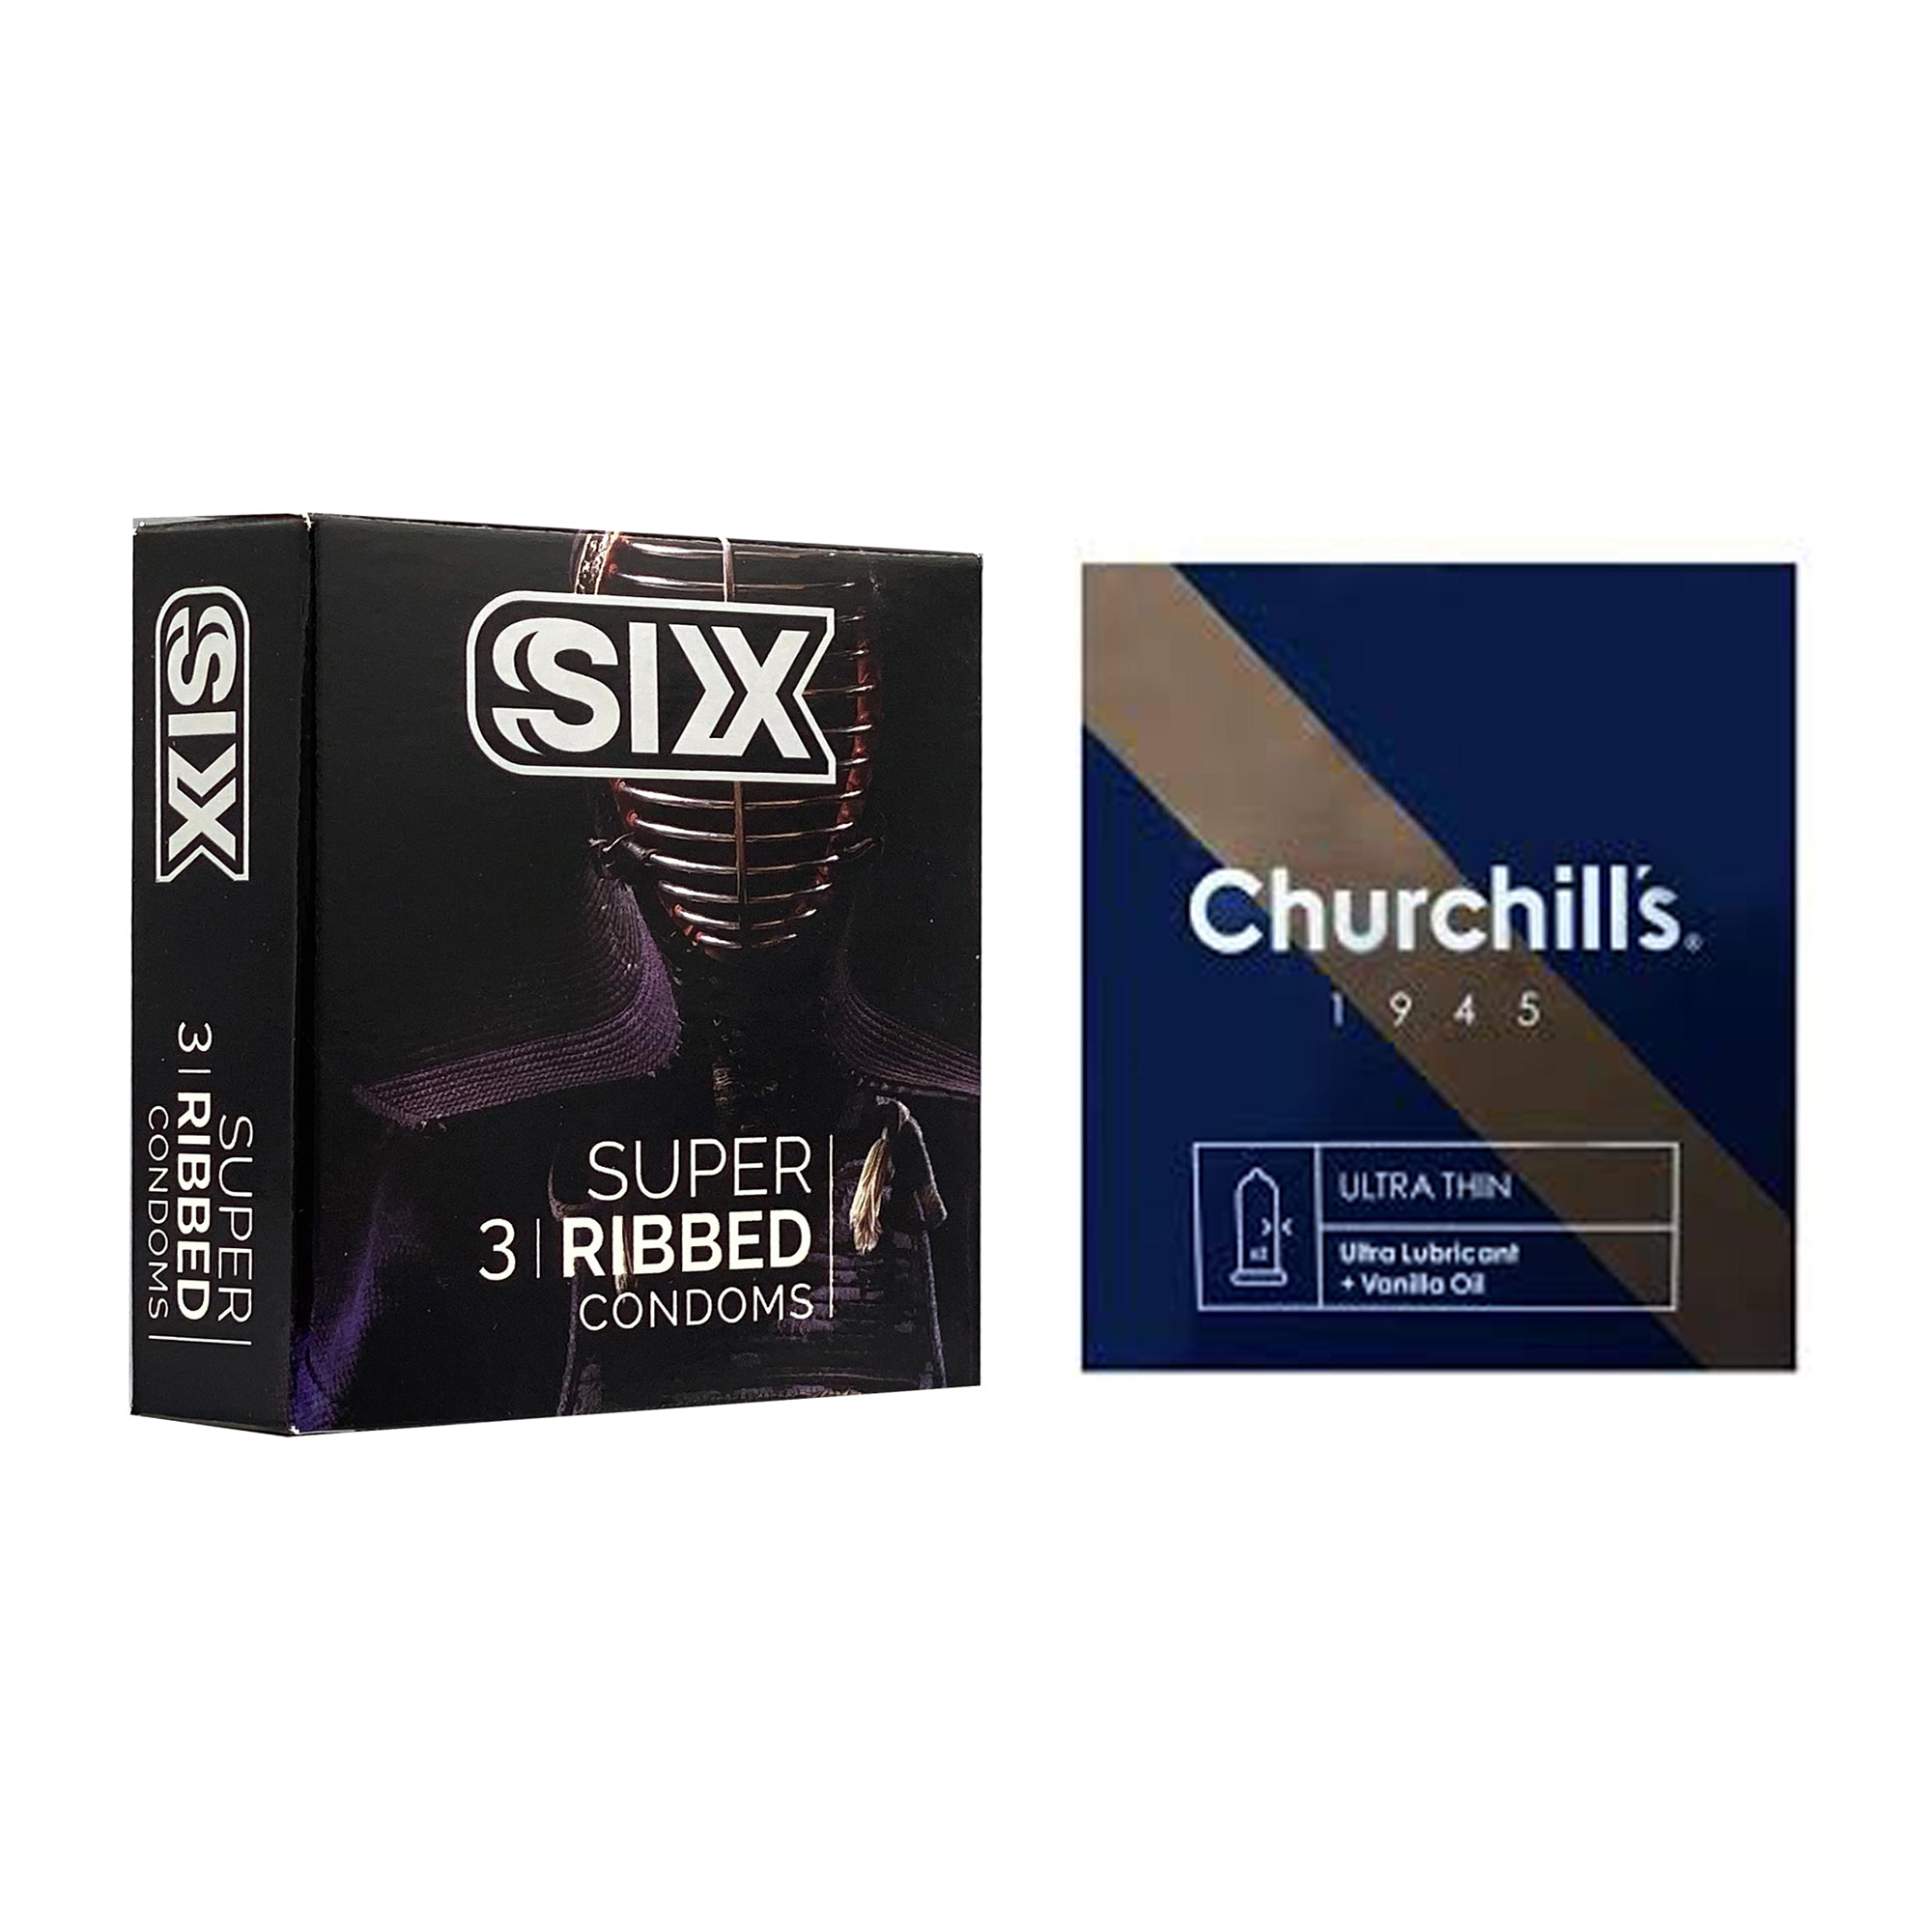 نکته خرید - قیمت روز کاندوم چرچیلز مدل Ultra Thin بسته 3 عددی به همراه کاندوم سیکس مدل شیاردار بسته 3 عددی خرید